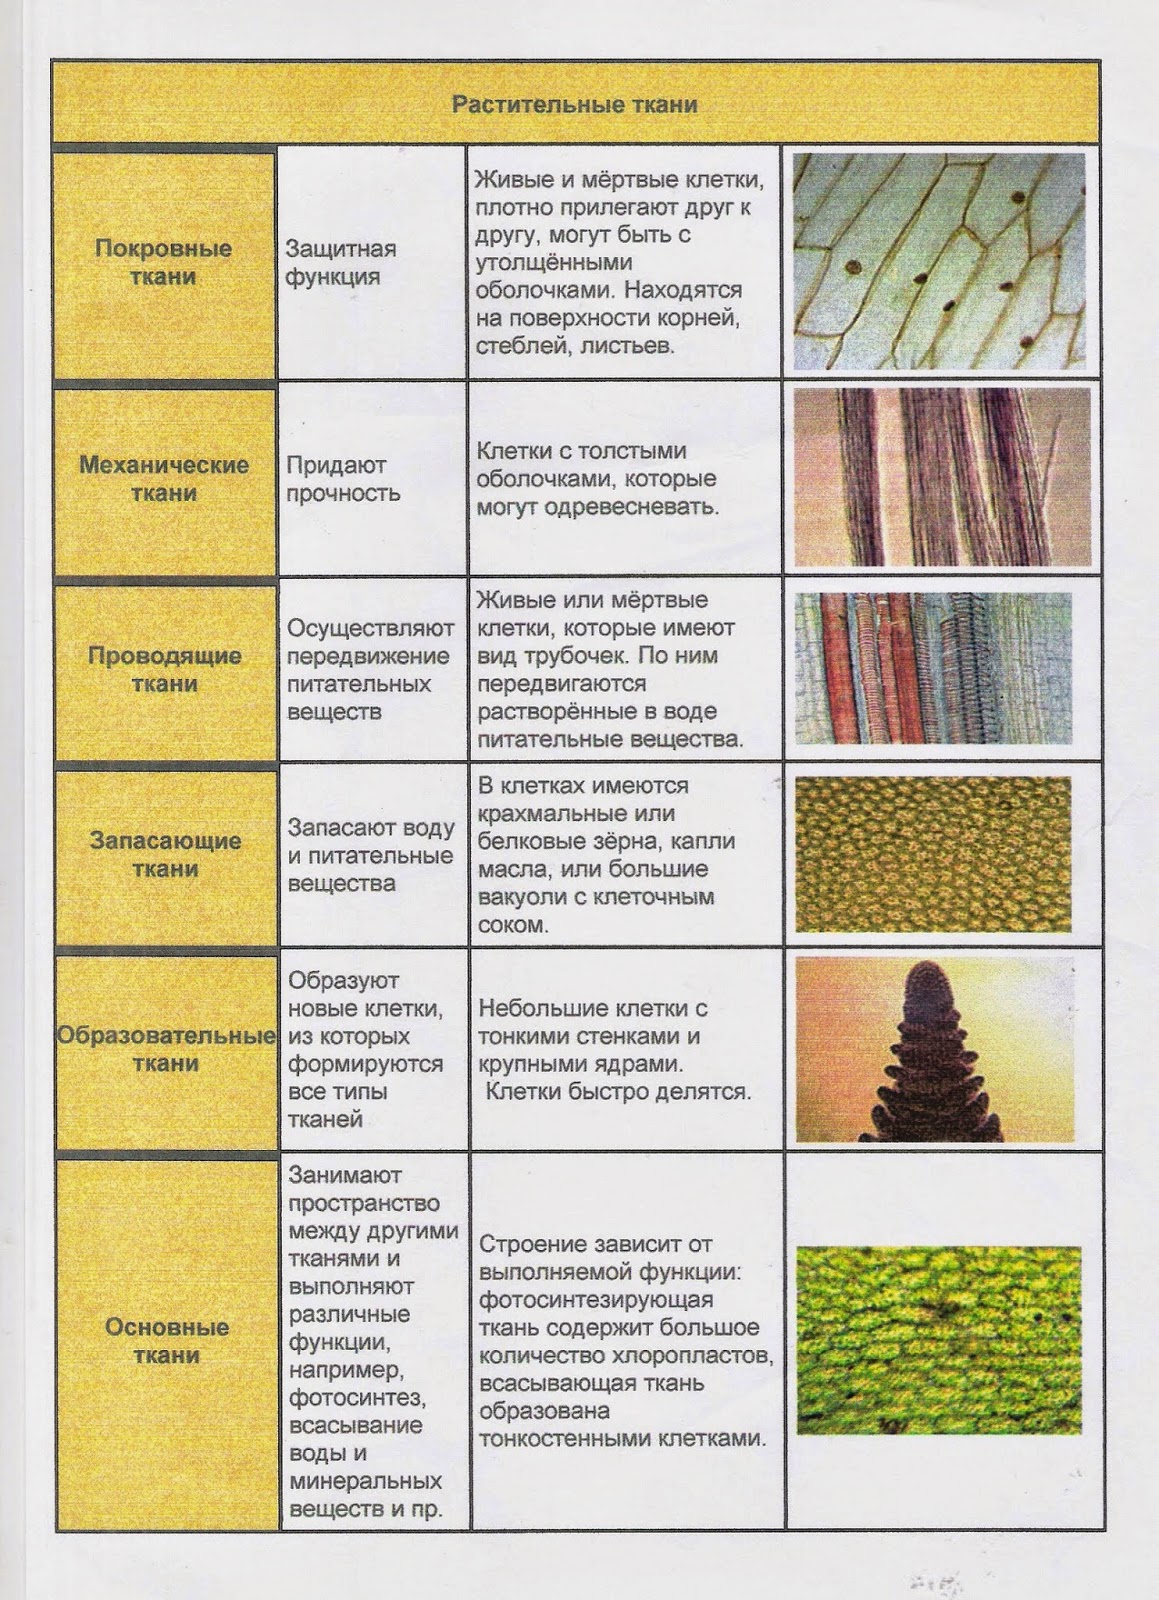 Древесные волокна какая ткань у растений. Таблица растительные ткани 6 класс биология. Типы тканей растений 6 класс биология таблица. Виды тканей растений таблица биология 6 класс. Виды тканей растений 5 класс биология таблица.